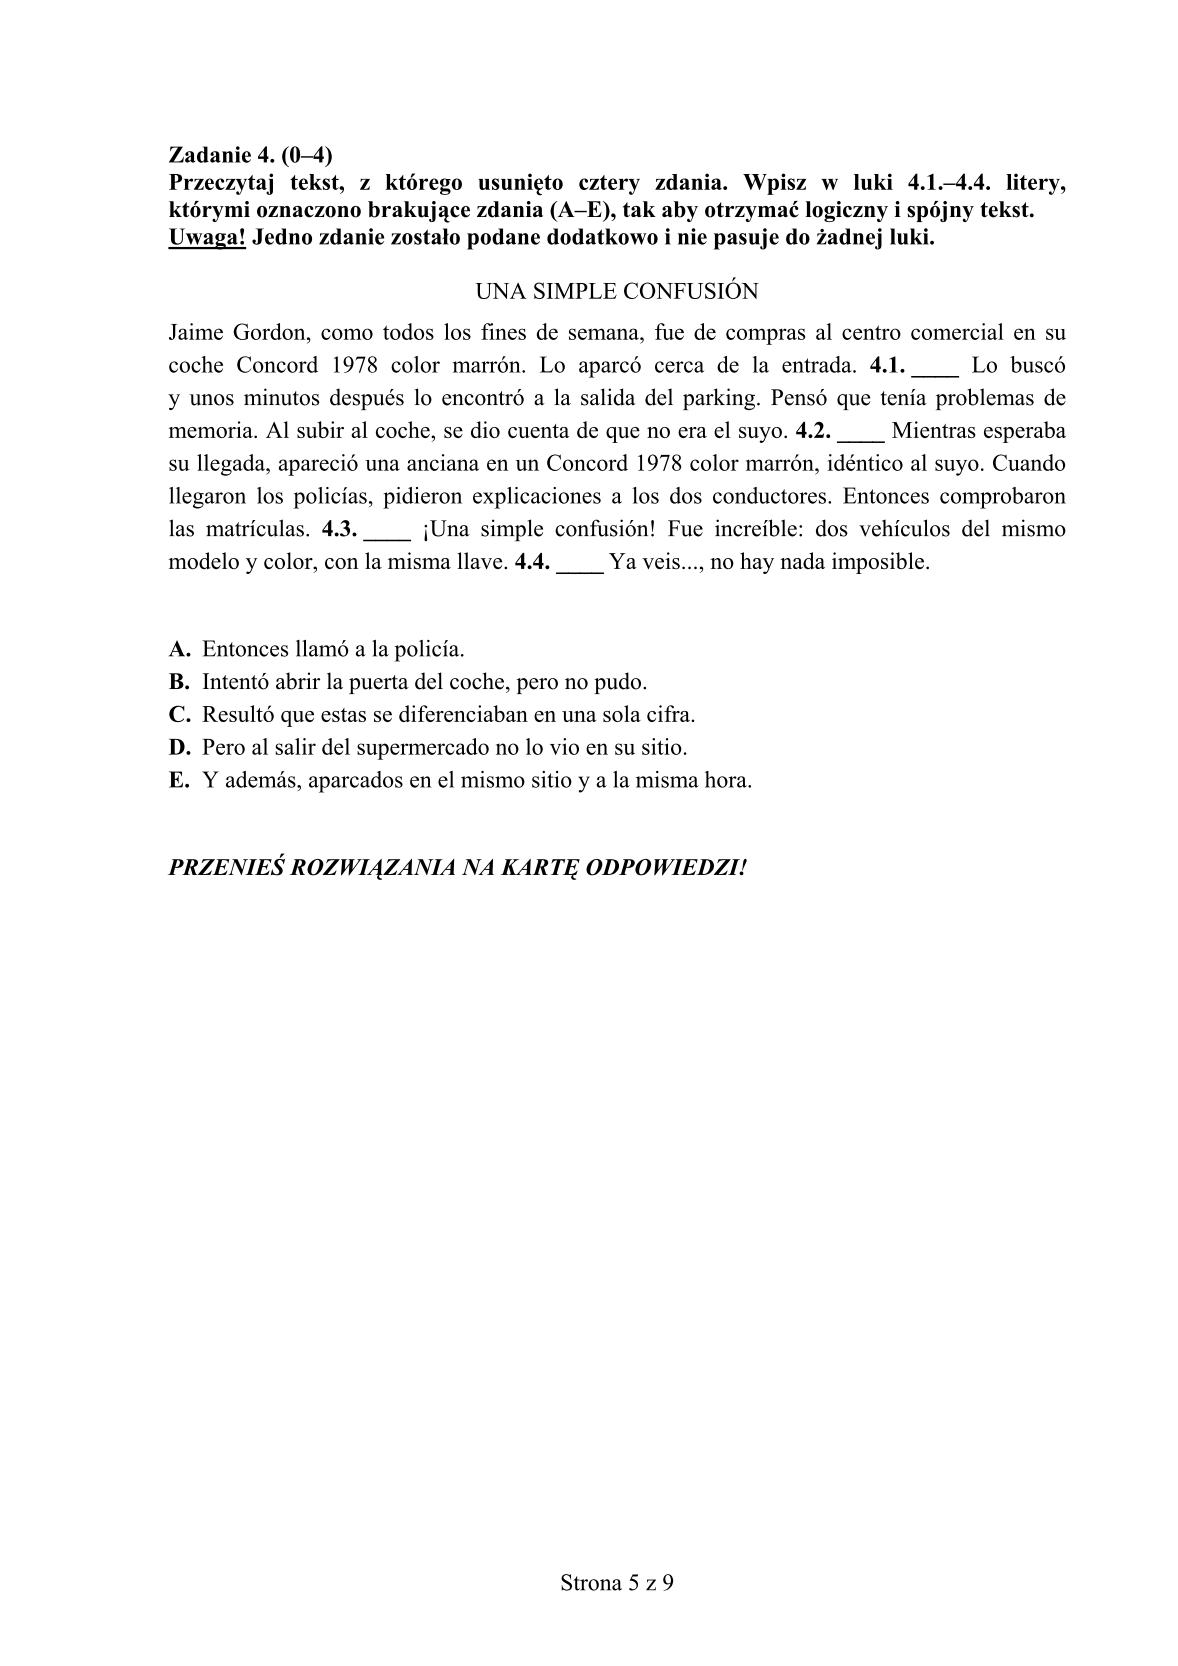 pytania-hiszpanski-poziom-rozszerzony-egzamin-gimnazjalny-25.04.2014-5